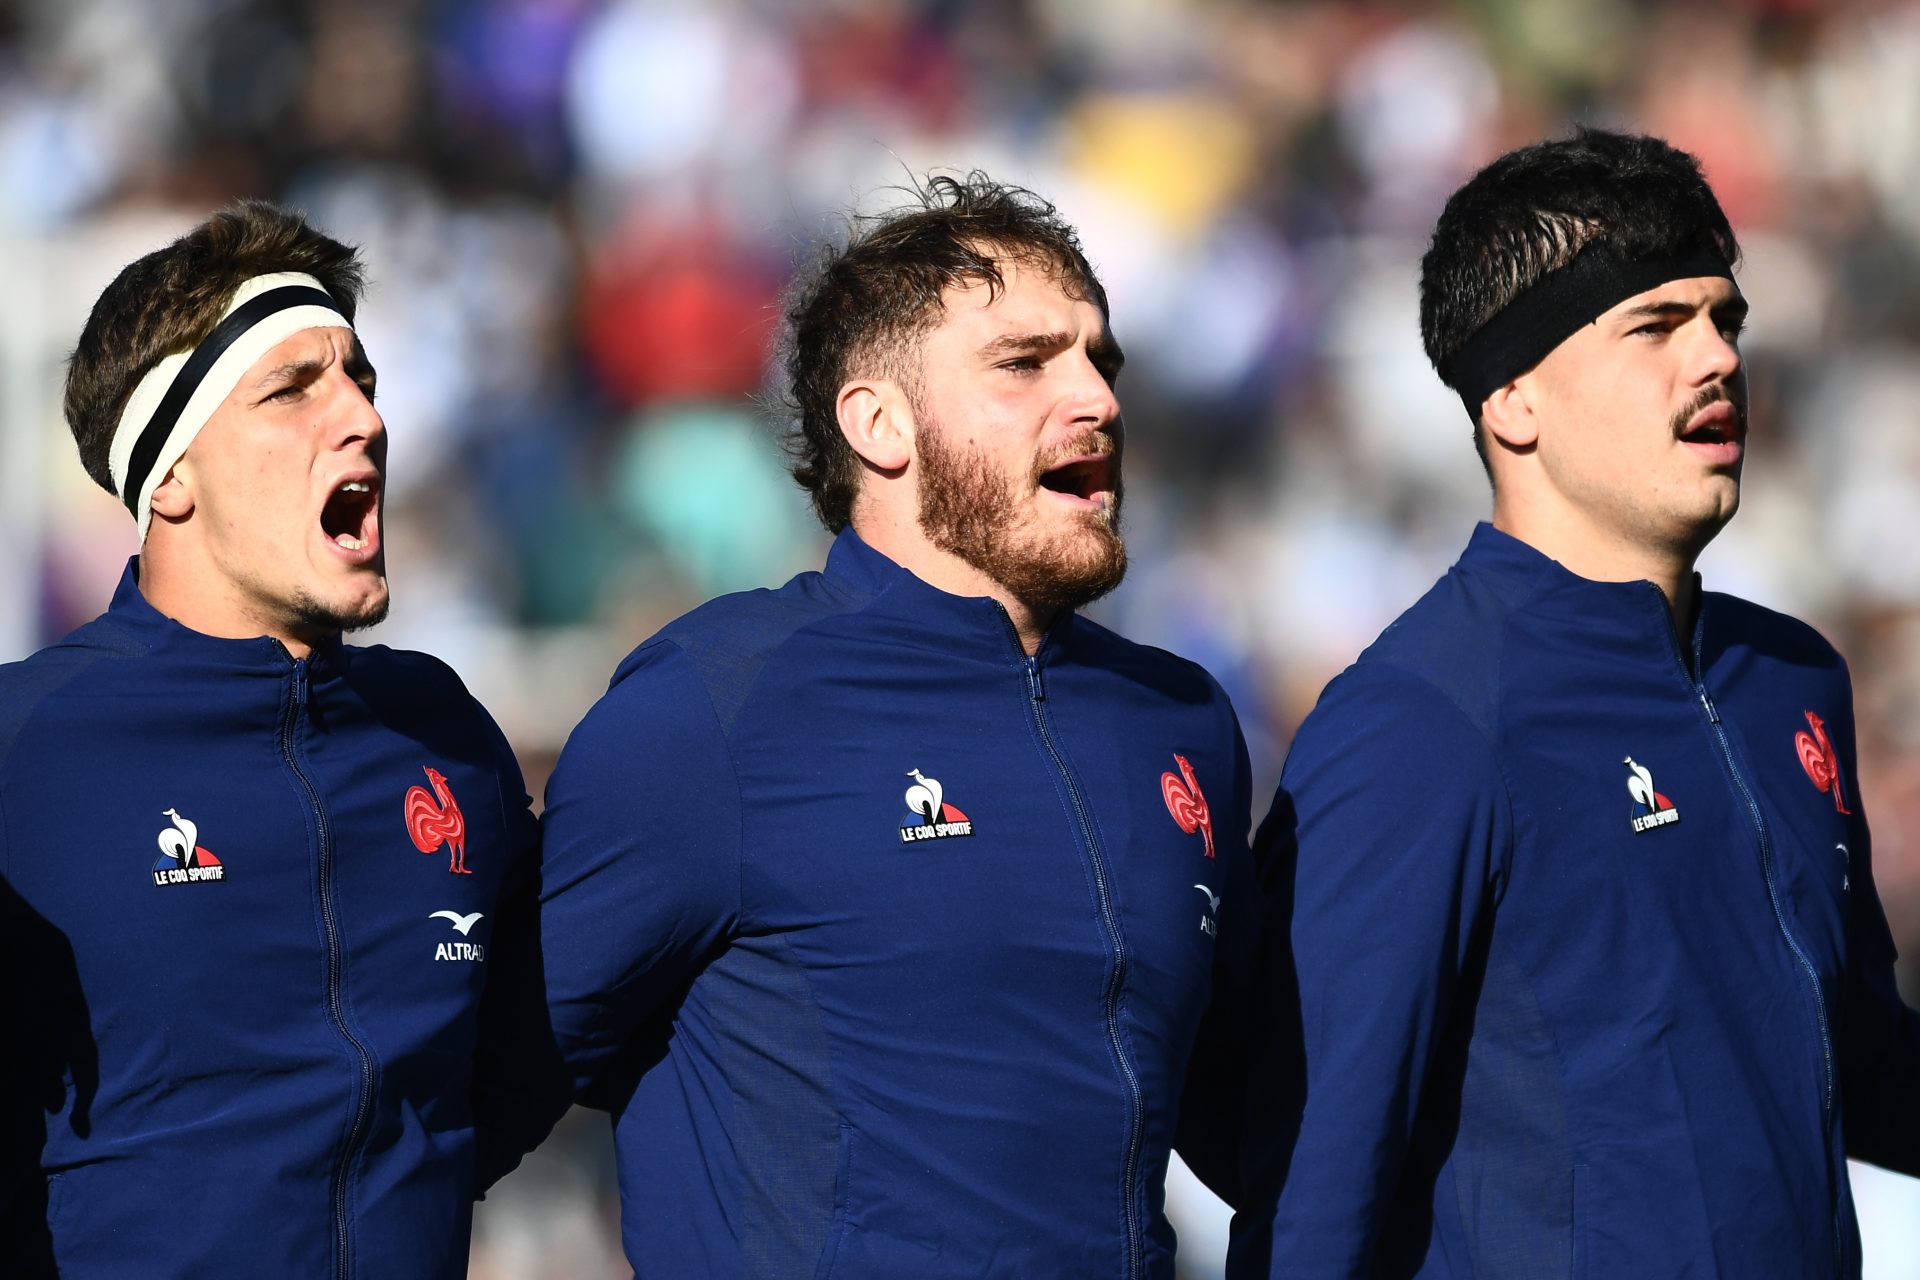 Escándalo en el rugby francés: Argentina conmocionada por 